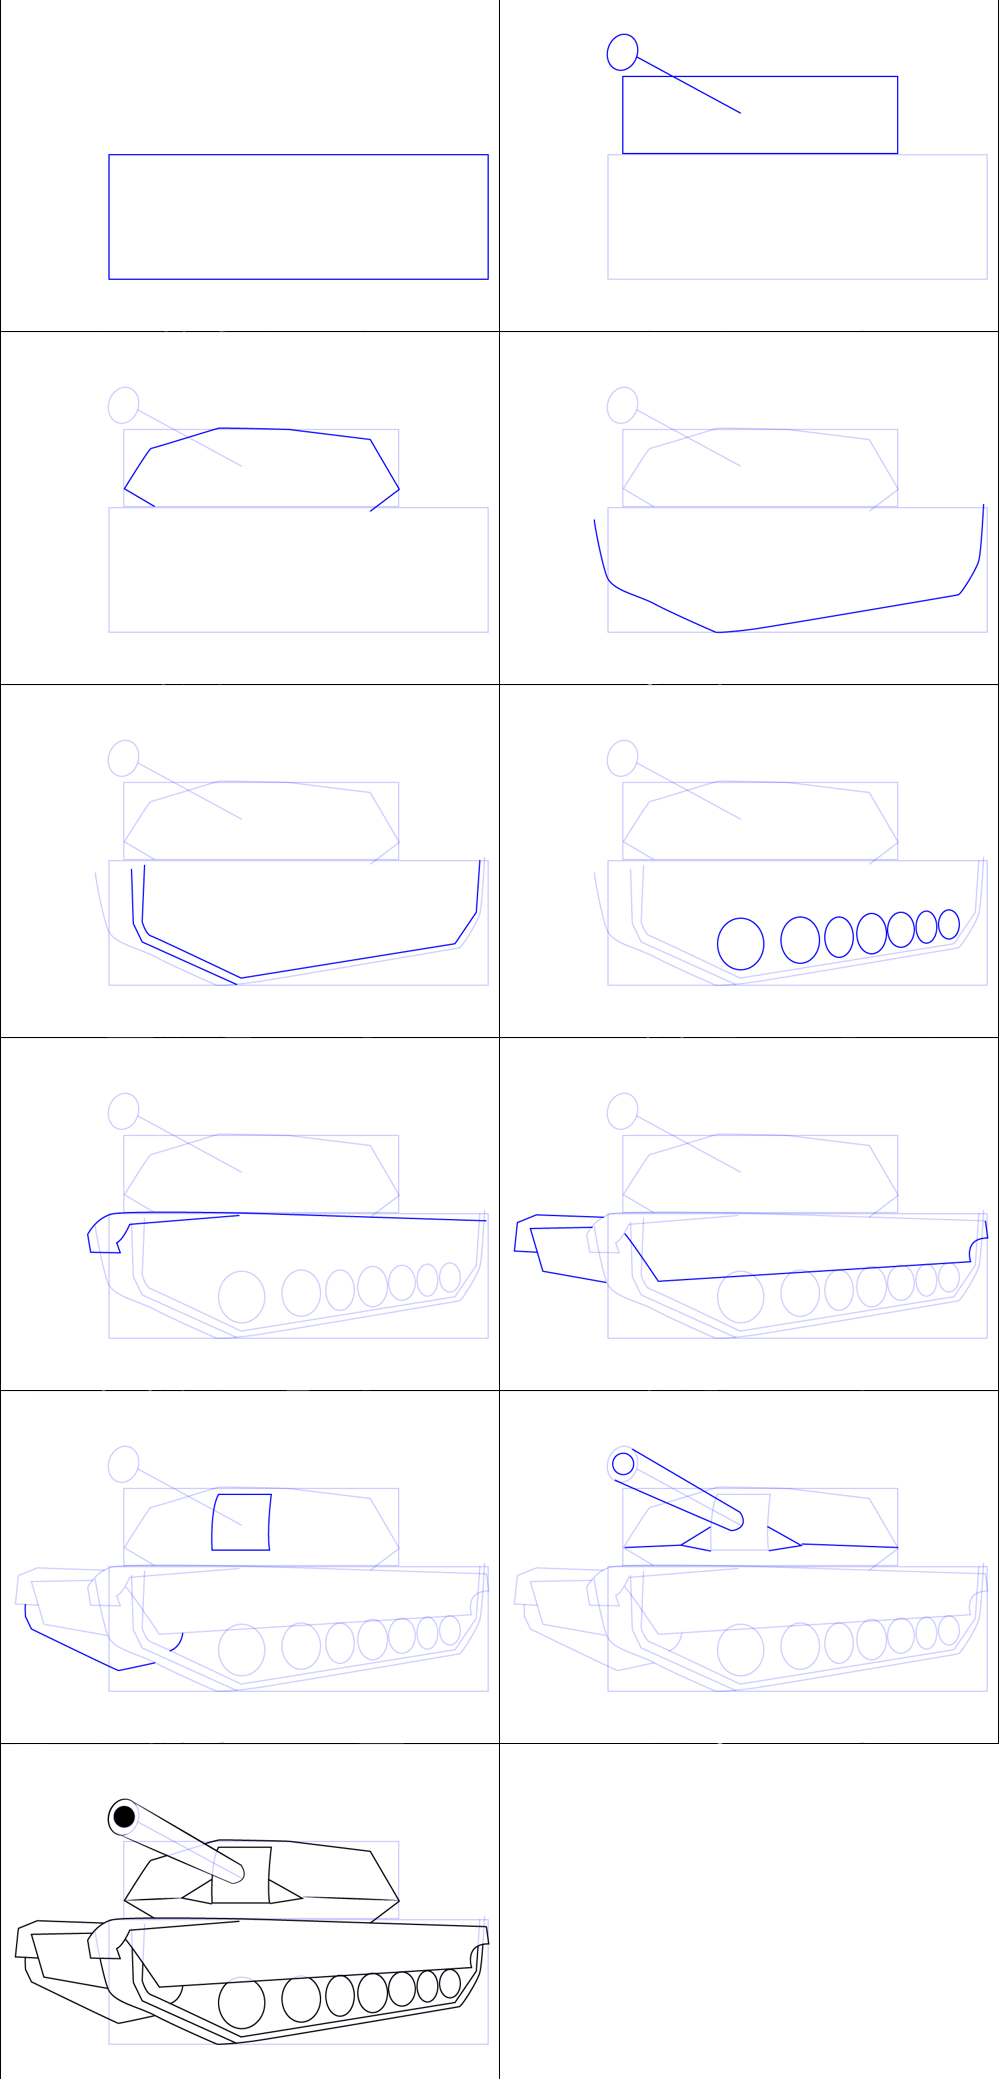 Basit bir tanki çizimi (1) çizimi